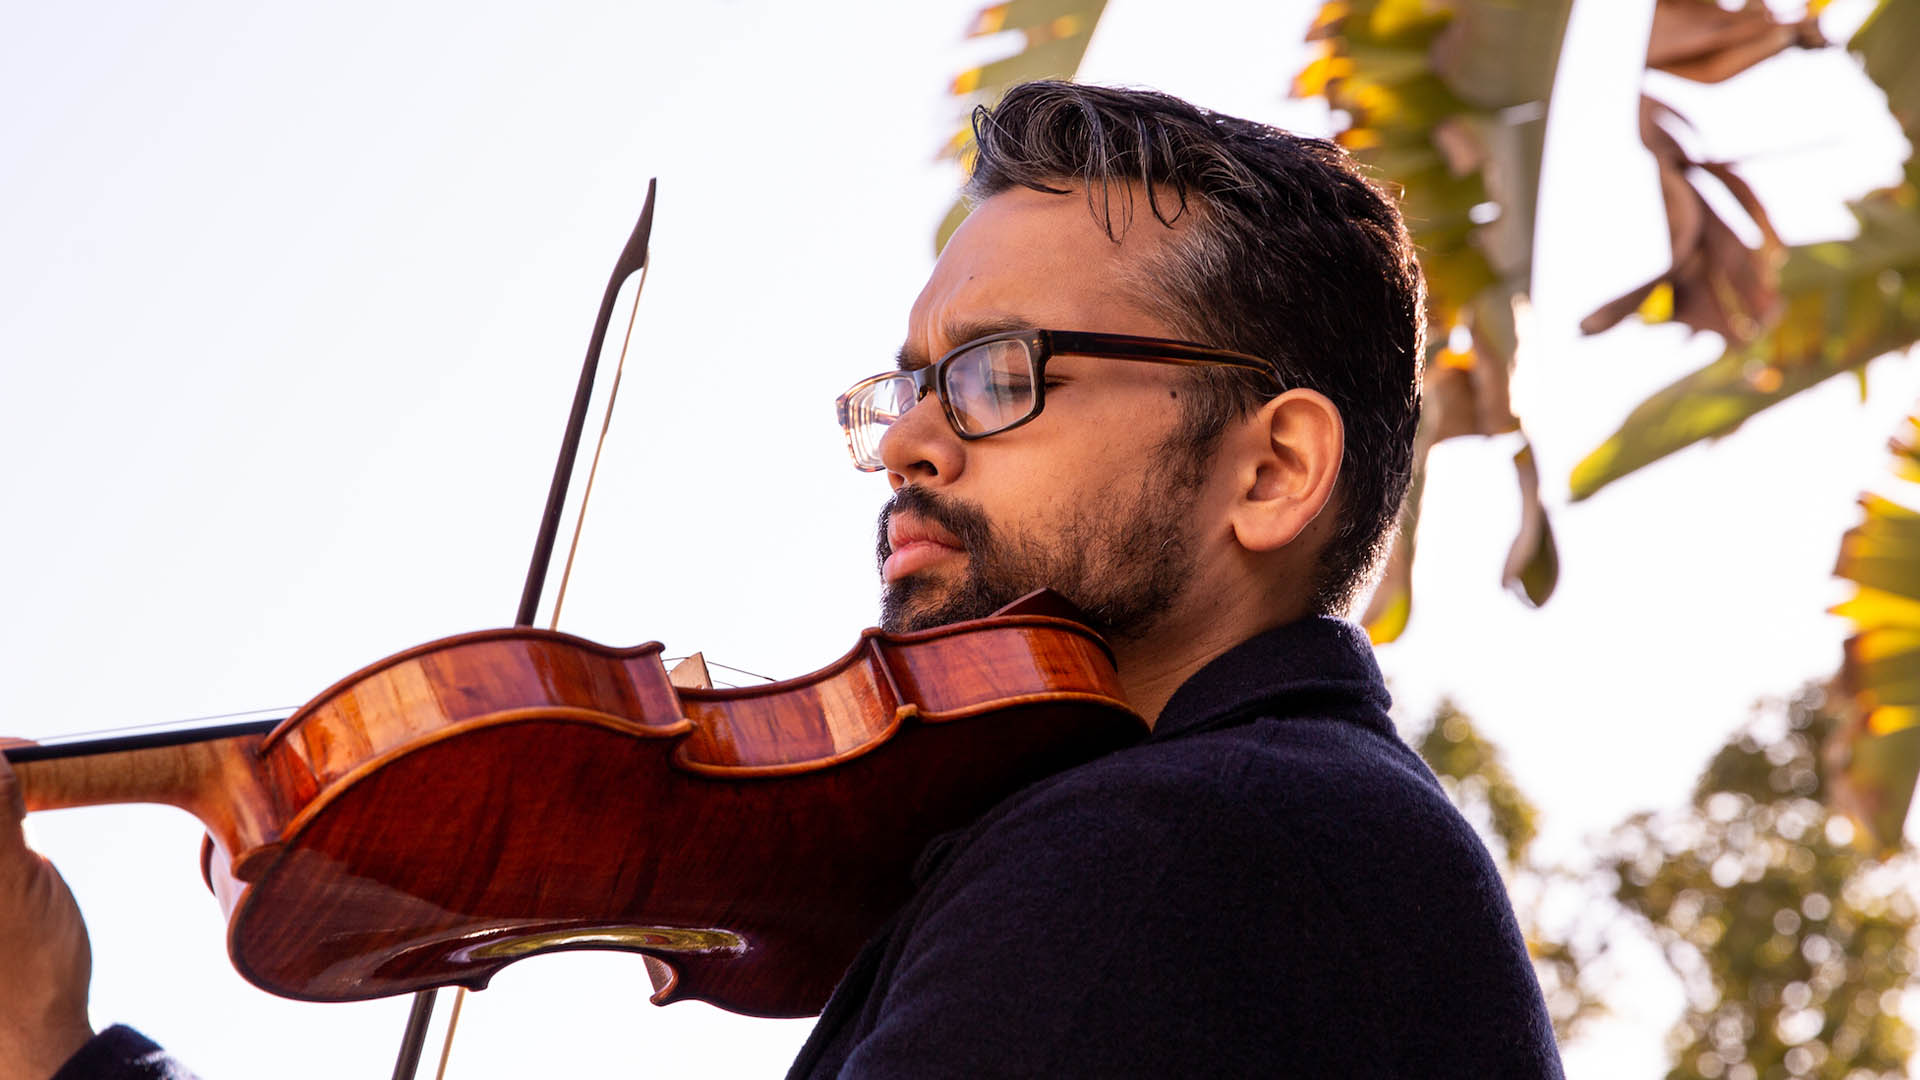 Vijay Gupta, violinist in recital